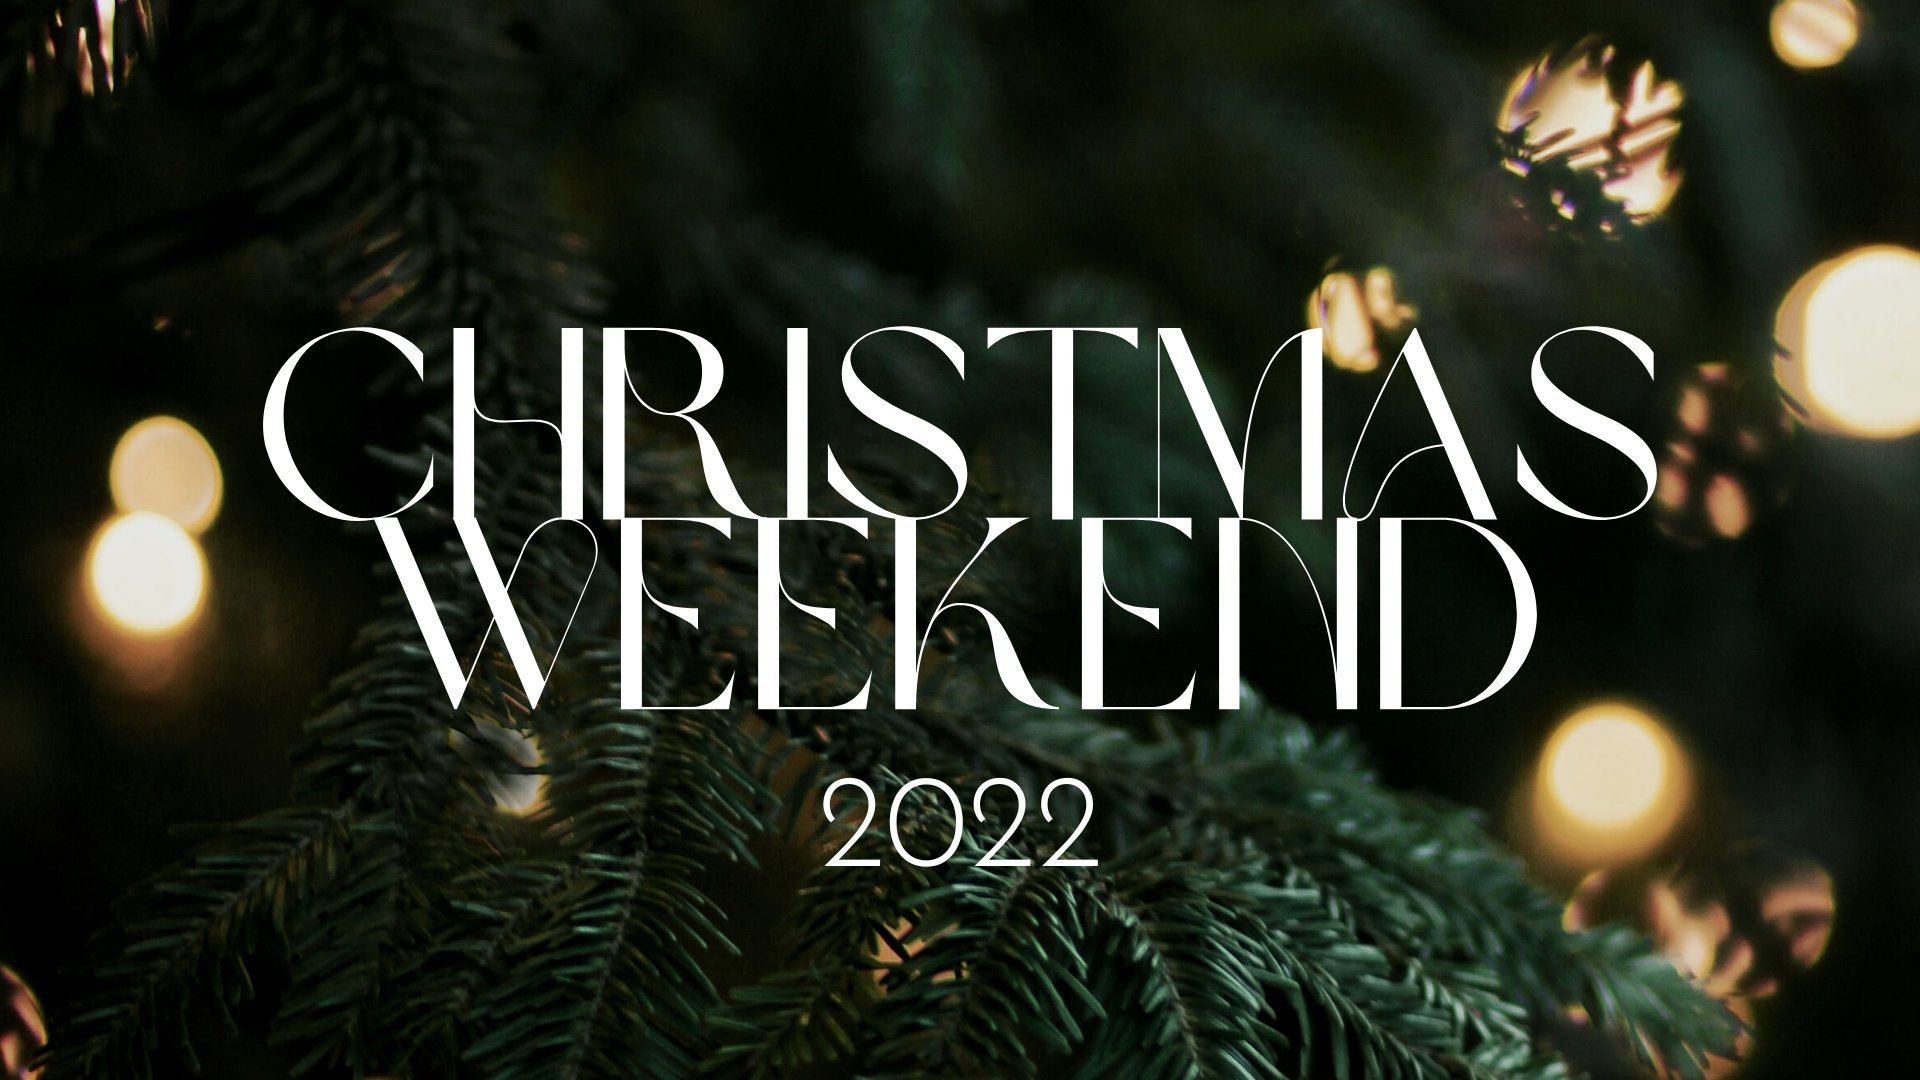 Message Series: Christmas Weekend 2022